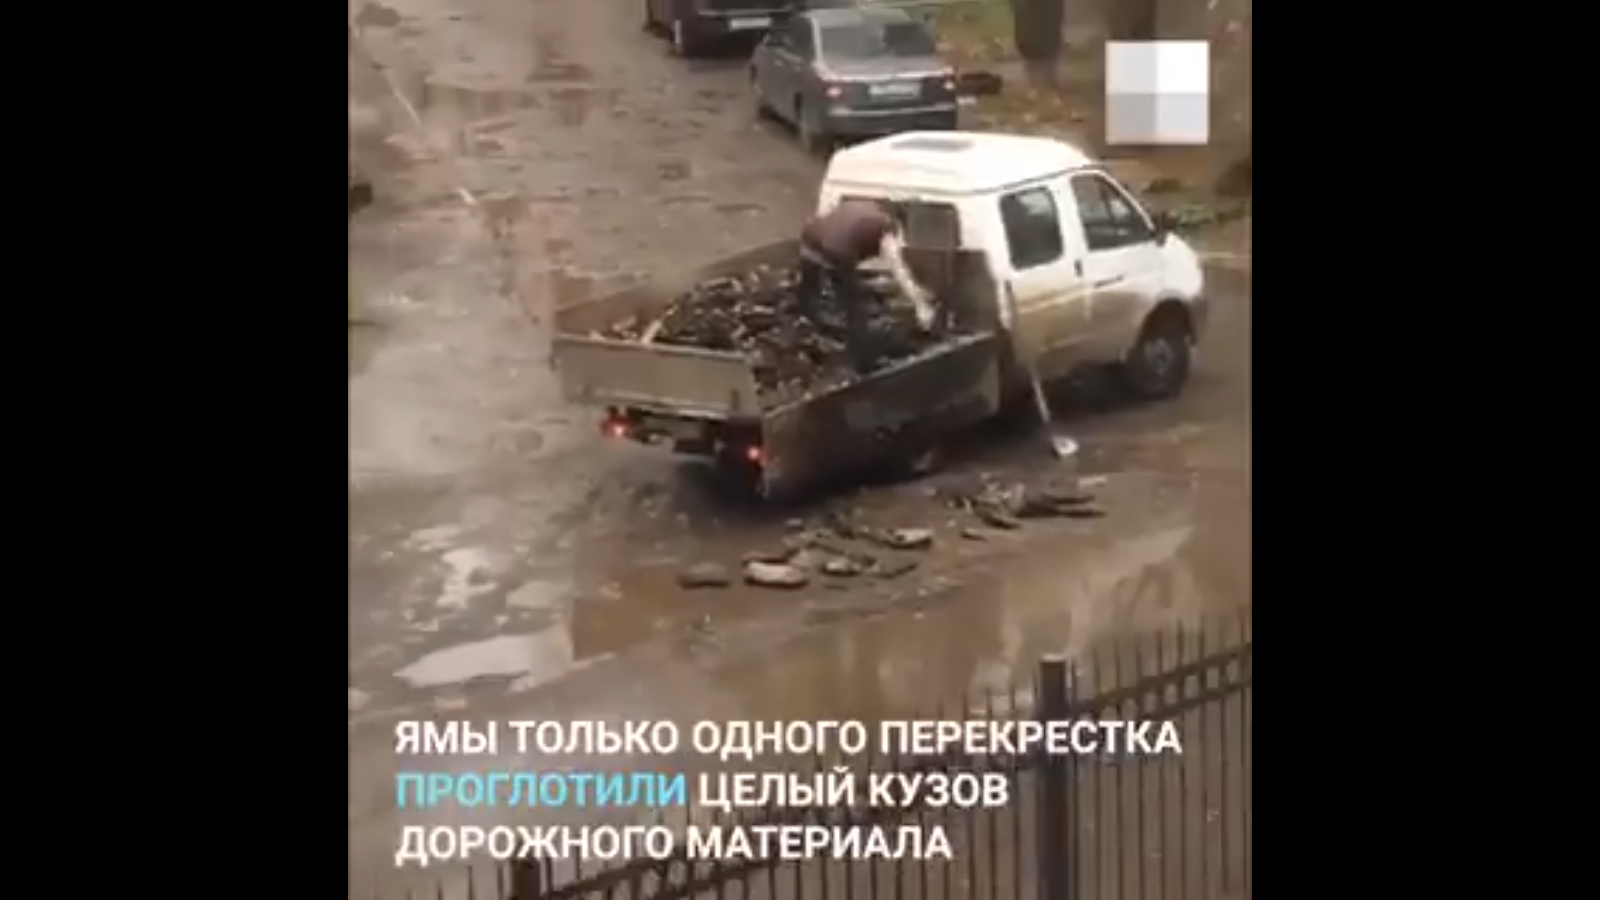 Видео дня: в Самаре ремонтируют дороги забрасыванием ям старым асфальтом